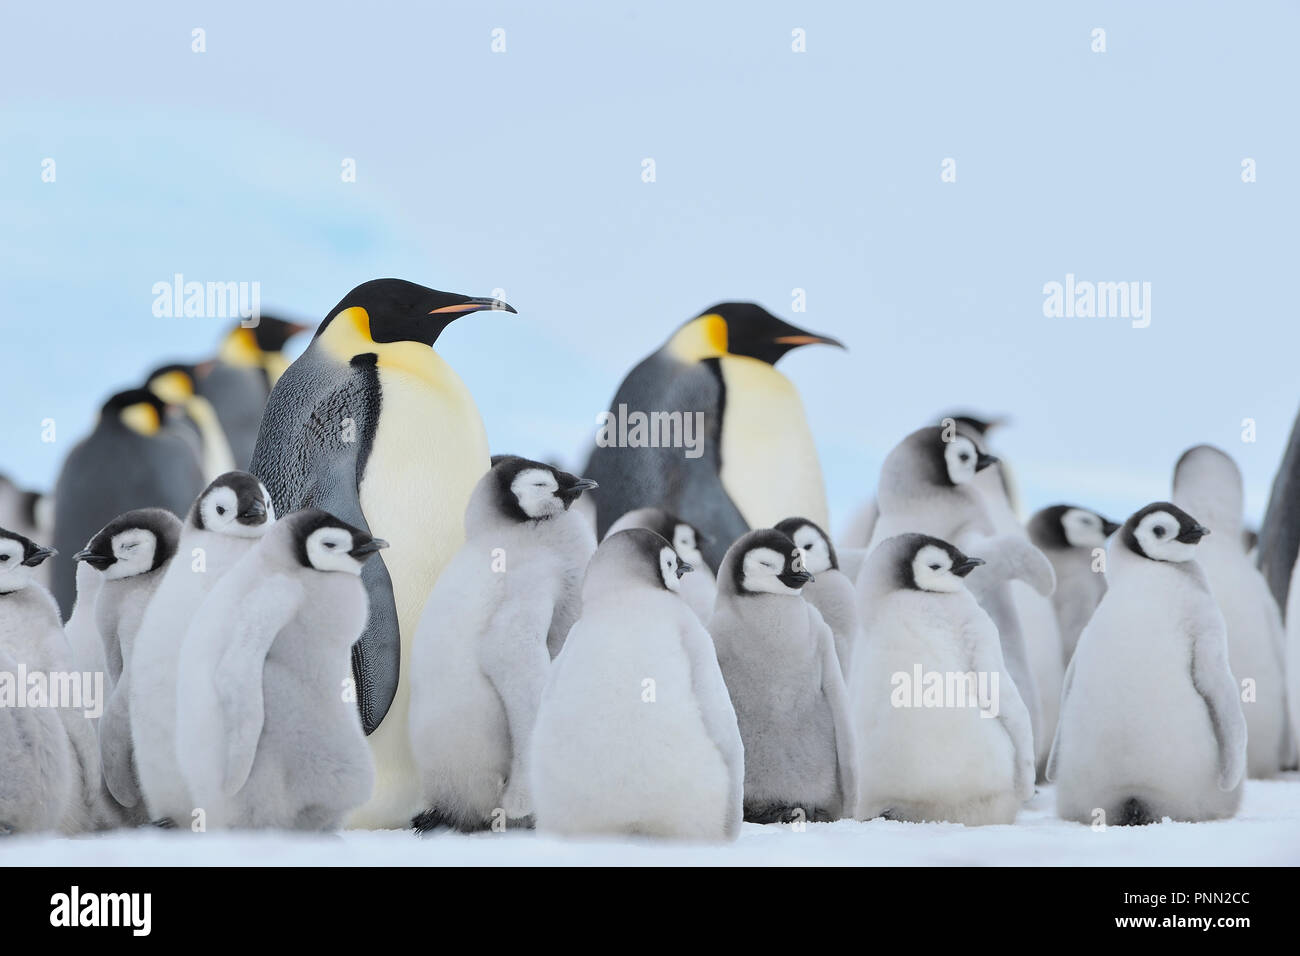 Manchots empereurs, Aptenodytes forsteri, colonie de pingouins avec des adultes et des poussins, Snow Hill Island, Péninsule Antarctique, l'Antarctique Banque D'Images